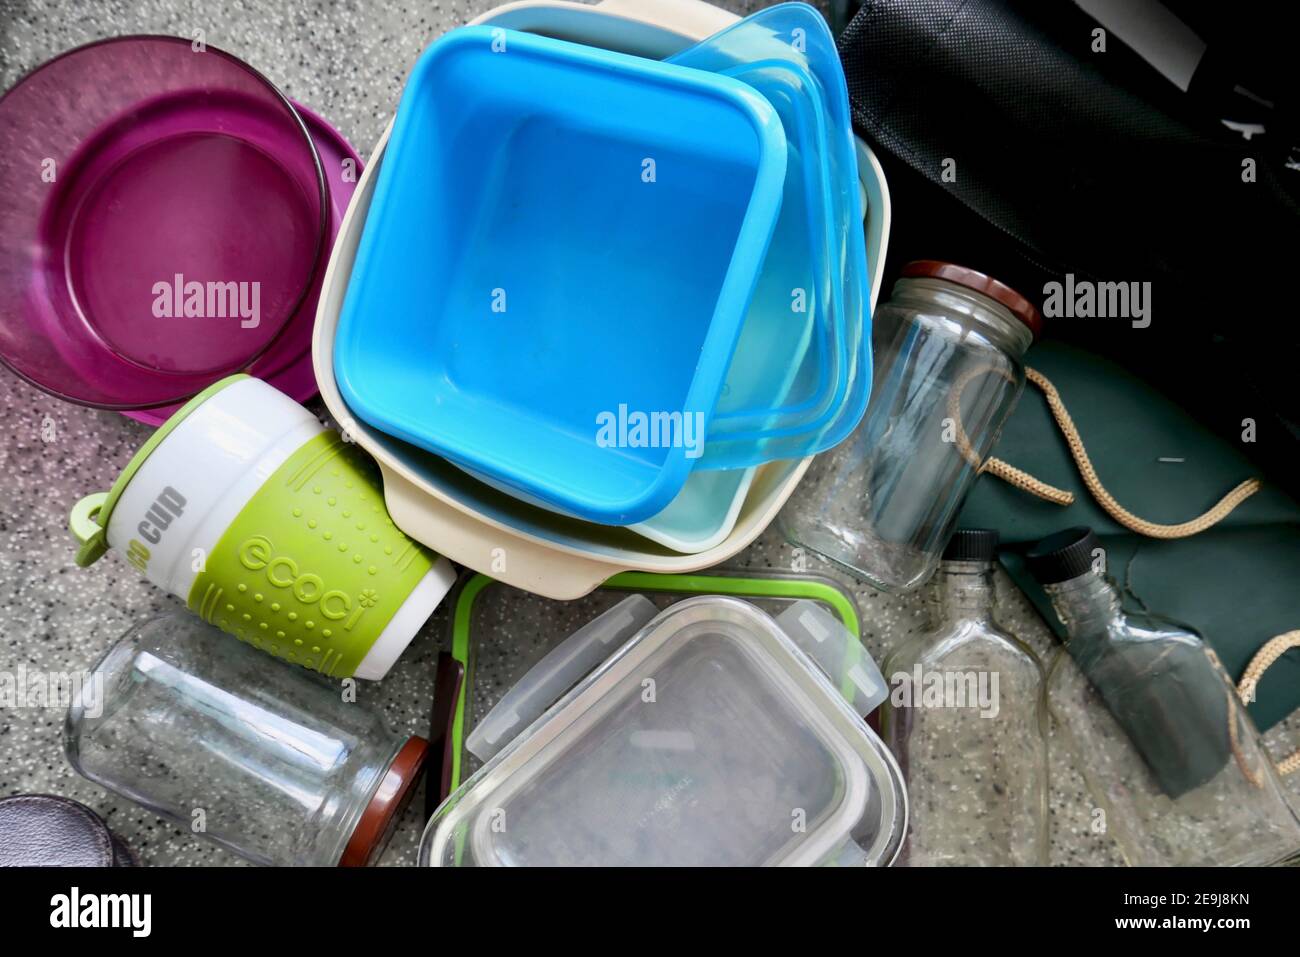 https://c8.alamy.com/comp/2E9J8KN/containers-for-zero-waste-lifestyle-2E9J8KN.jpg